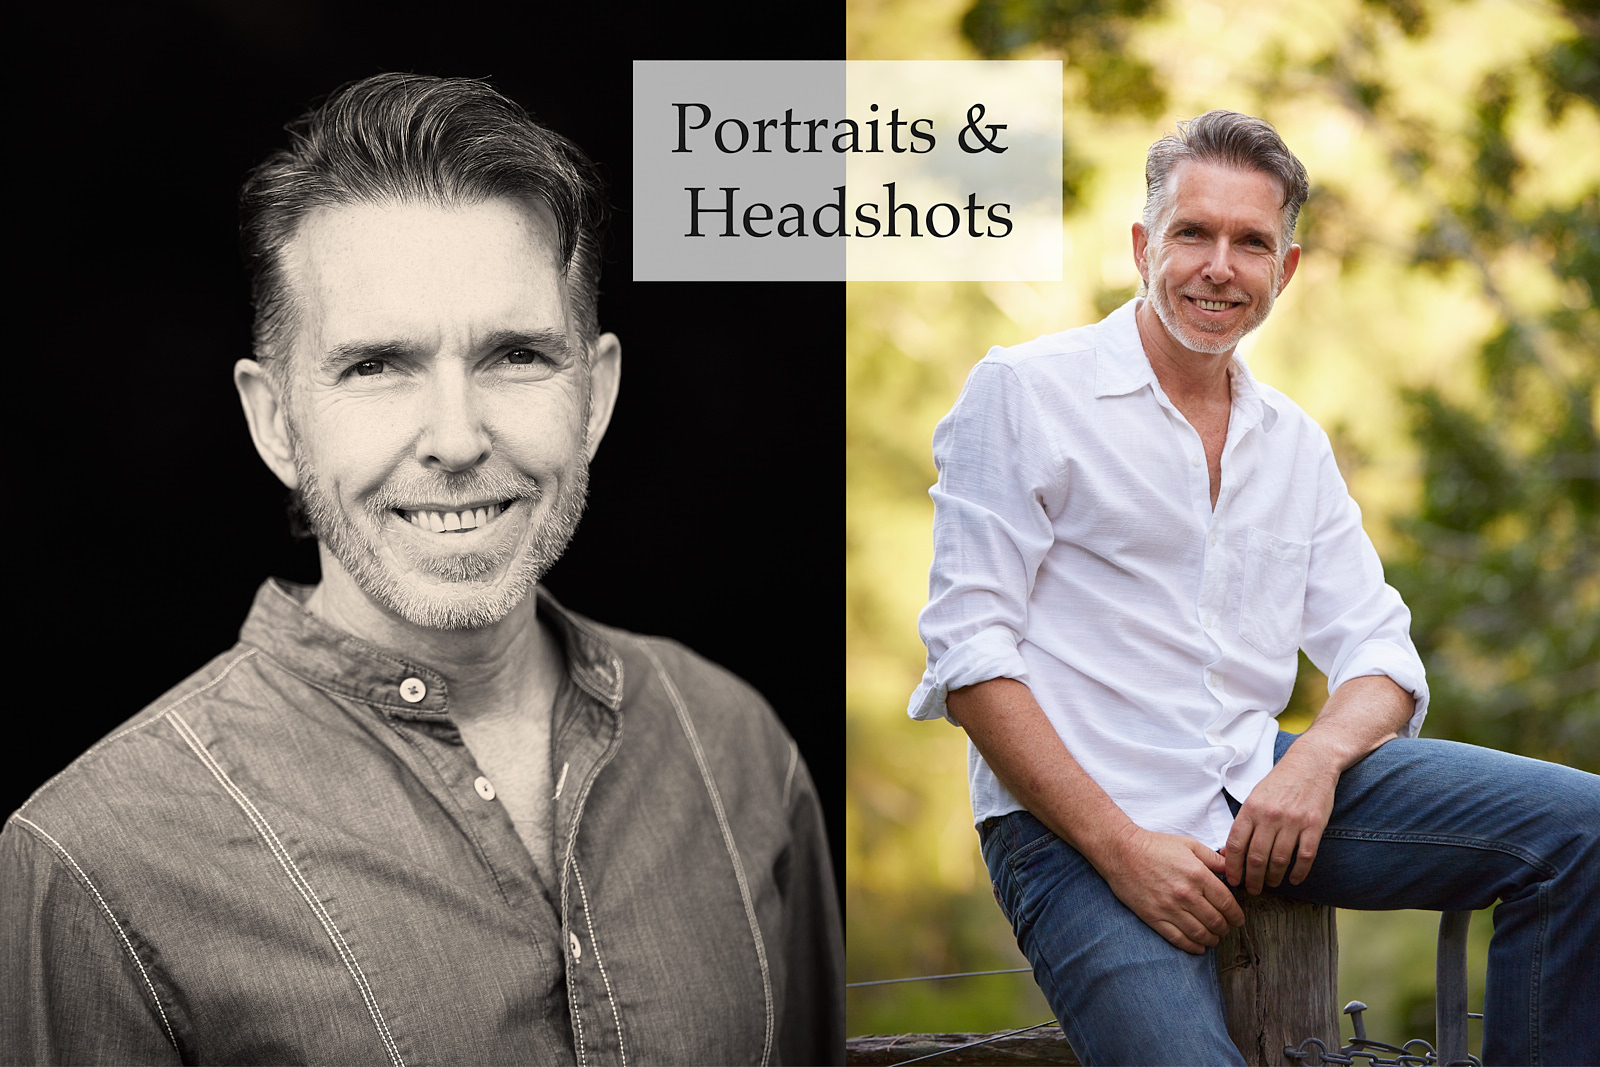 Corporate portraits and headshots